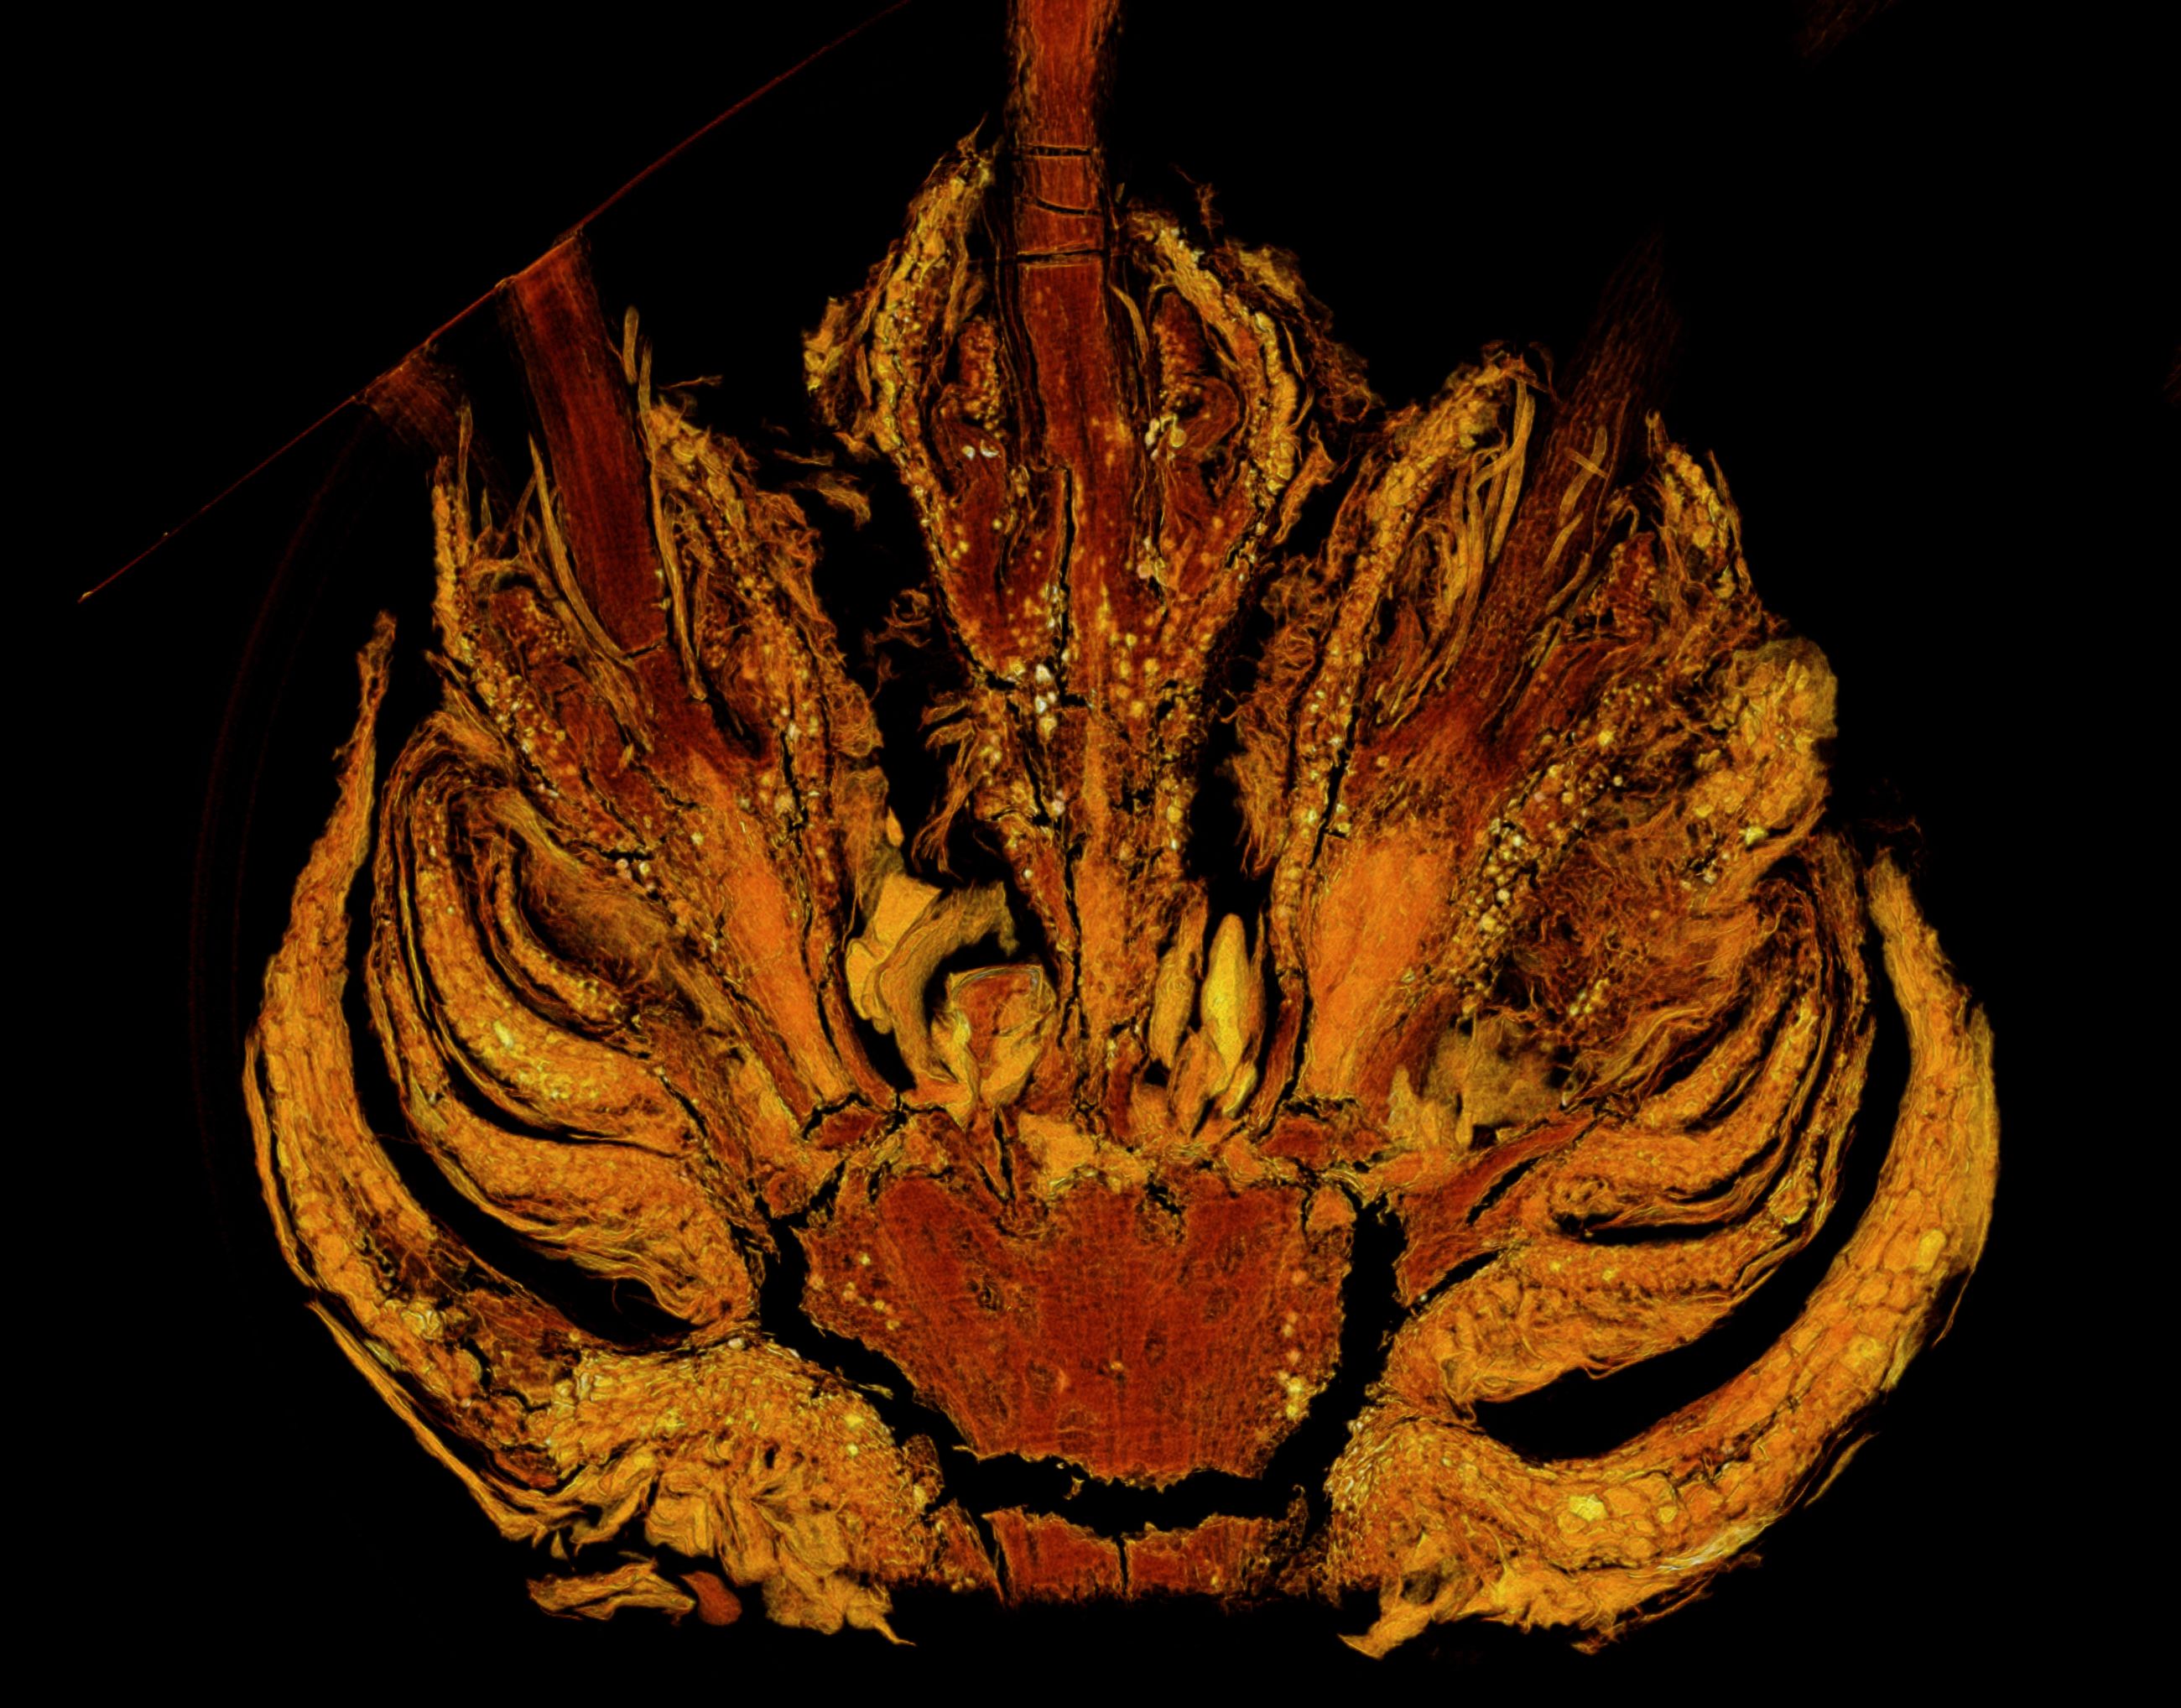   Längsschnitt durch einen Blütenstand einer Scheinkastanie aus Baltischen Bernstein, aufgenommen am Deutschen Elektronen Synchrotron (DESY), Hamburg  (© Eva-Maria Sadowski – Museum für Naturkunde Berlin)